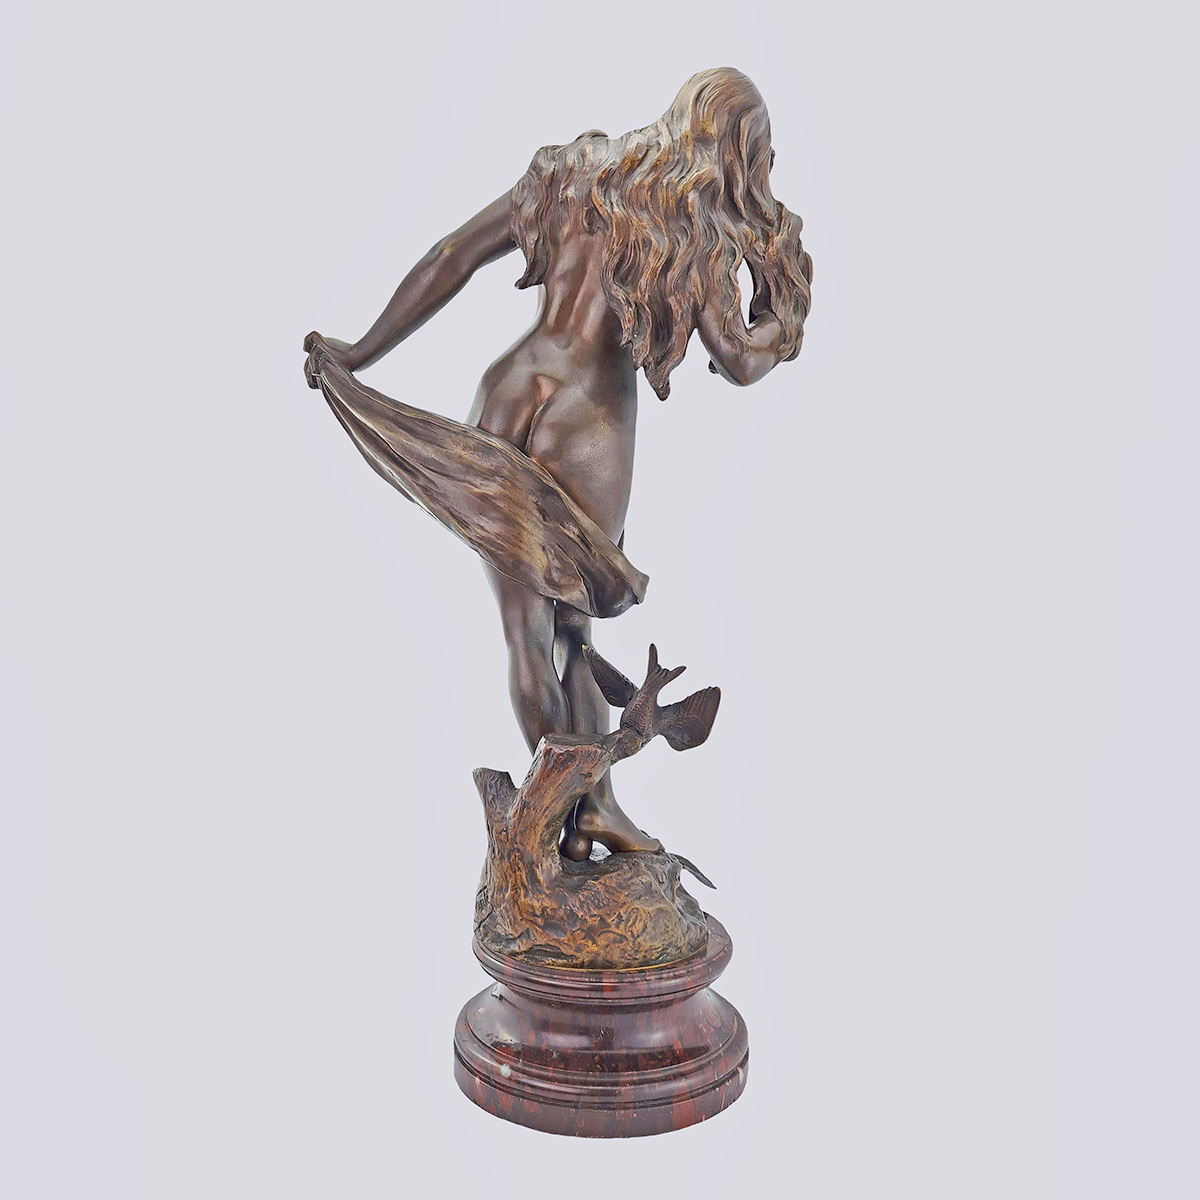 Скульптура «Девушка с голубями» из бронзы конца 19 века (E. Wante)